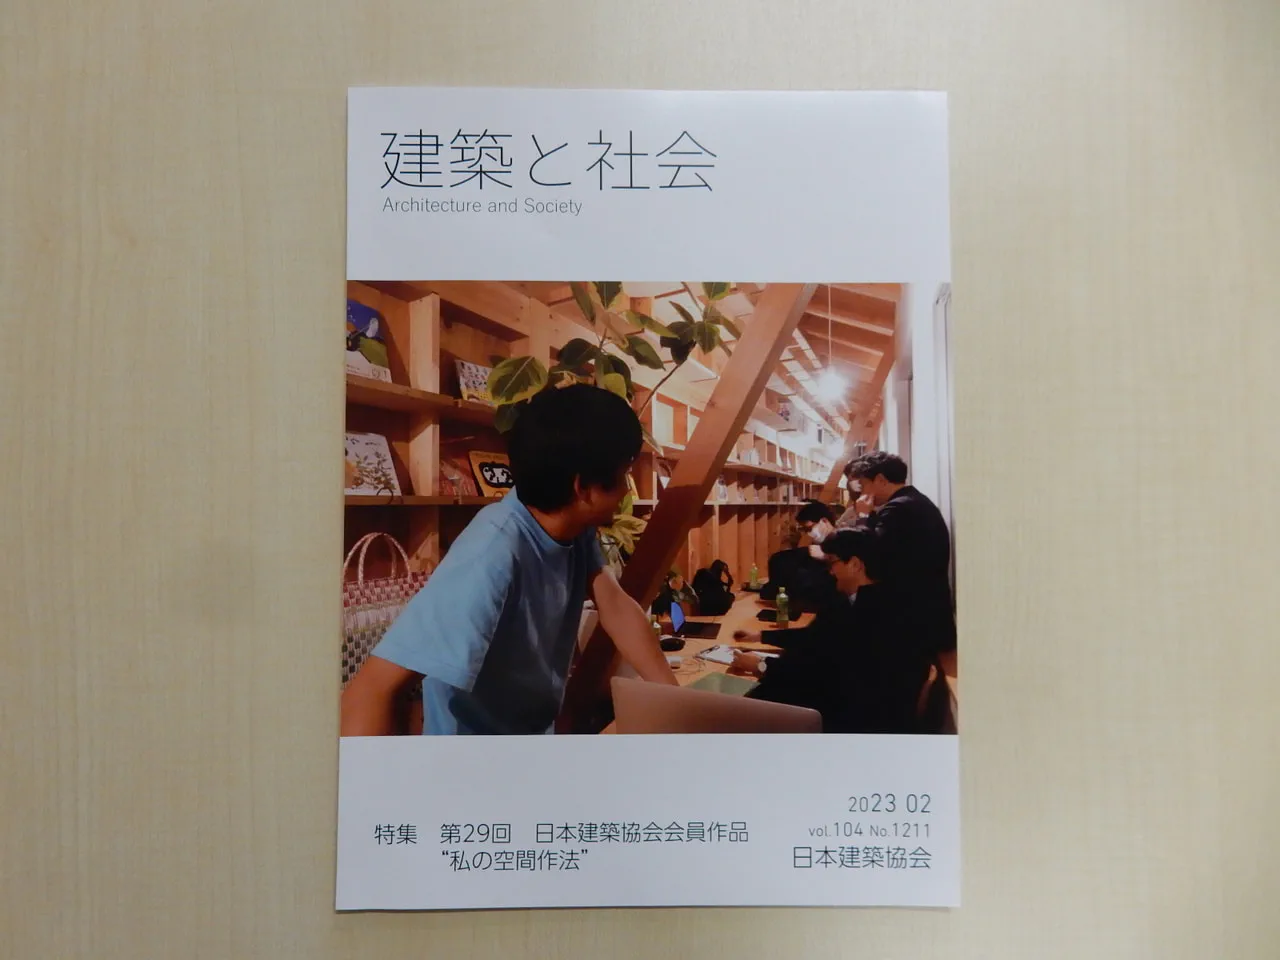 『建築と社会』に加嶋先生が手掛けたリノベーションプロジェクトと座談会の記事が掲載されました